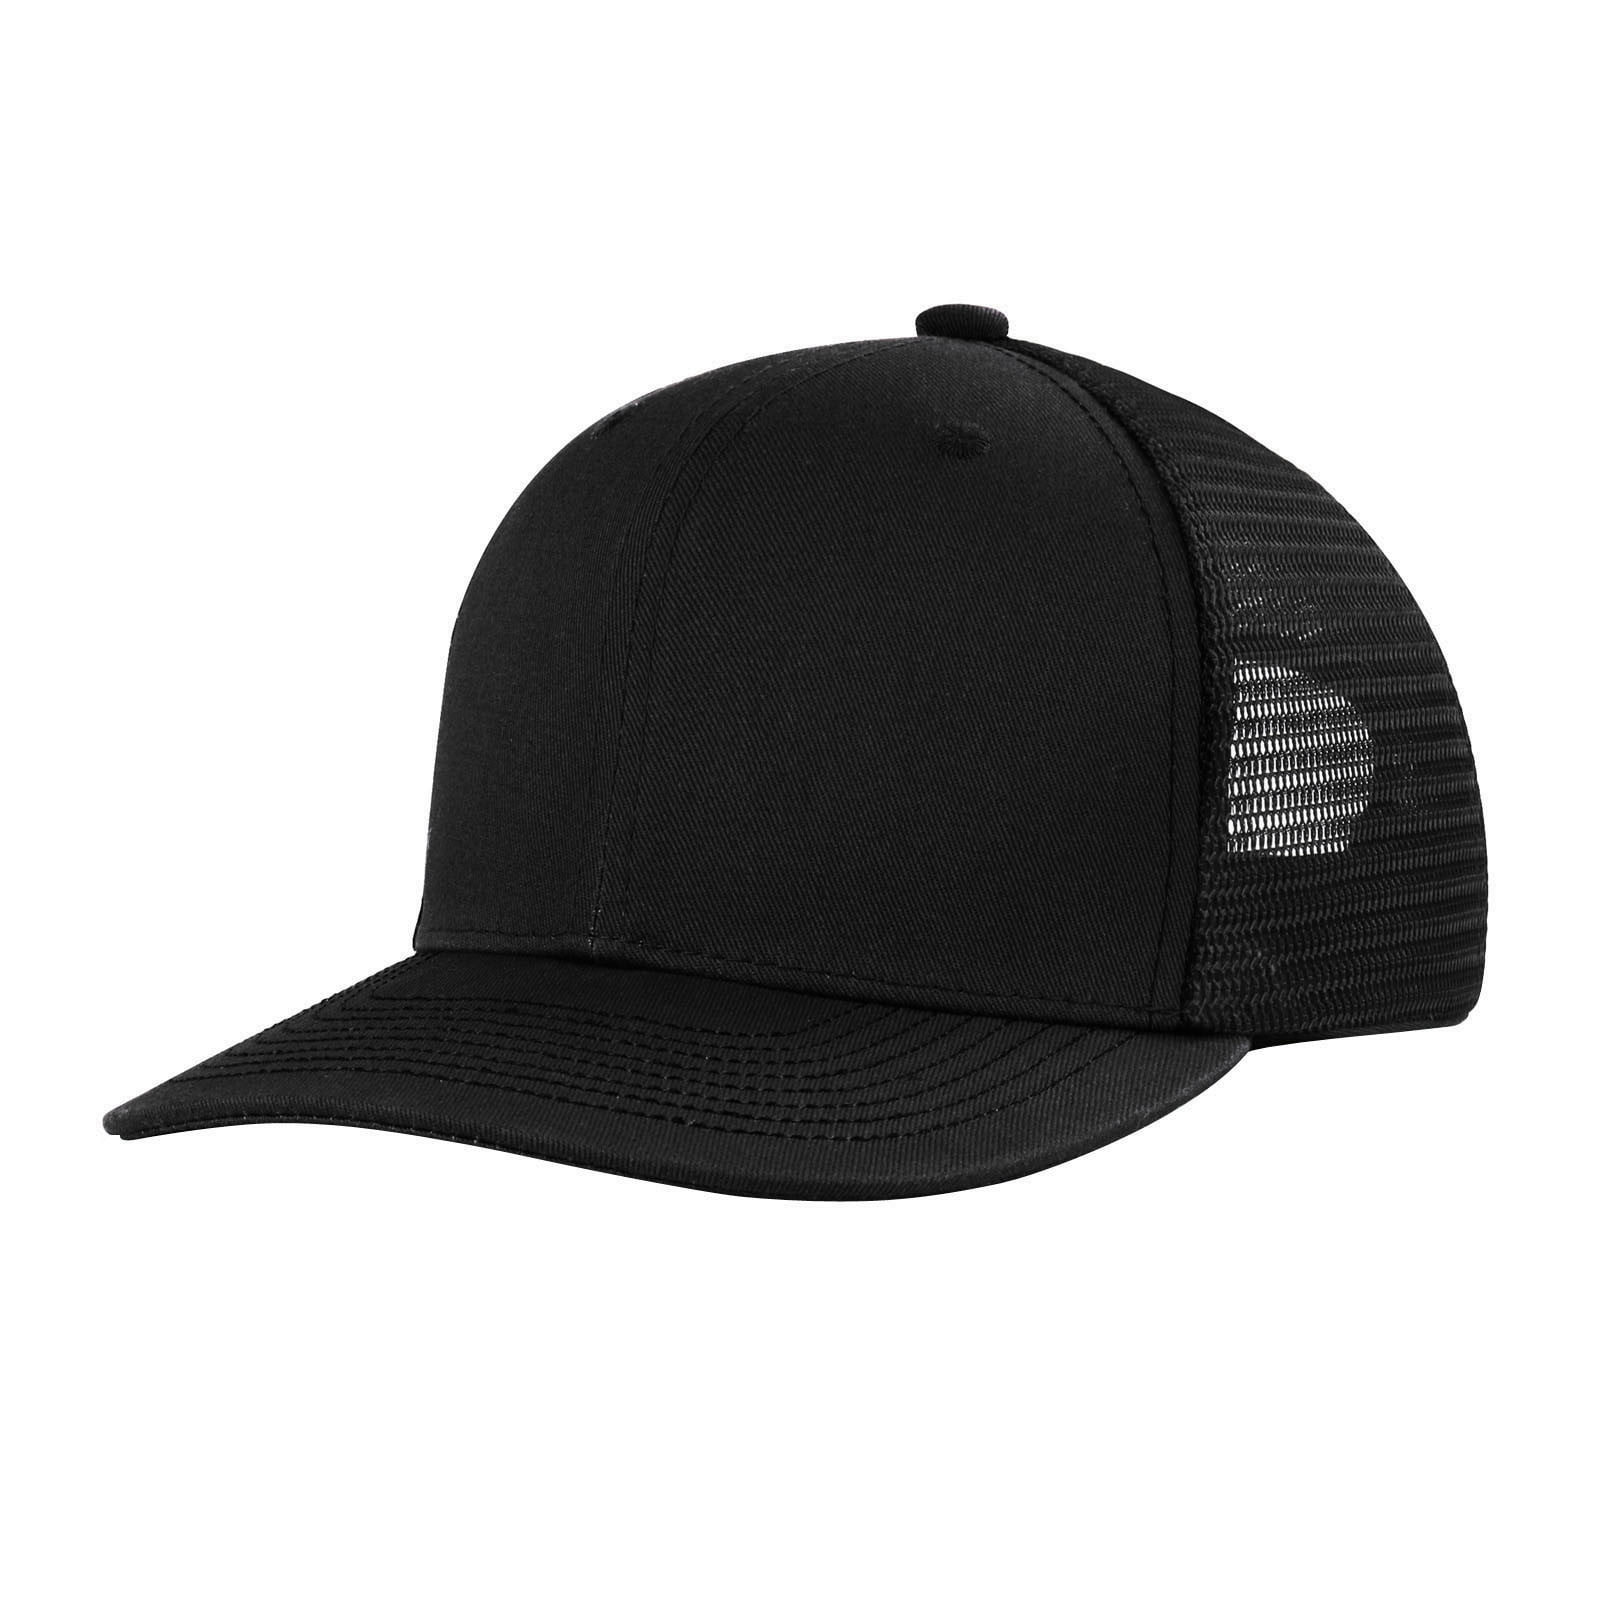 Fsqjgq Baseball Cap Trucker Hats for Men unisex Mesh Baseball Hat Ball Cap Hat Visor Hat Fix Cap Fisherman Hat Hats for Men Women Cotton Blended Black